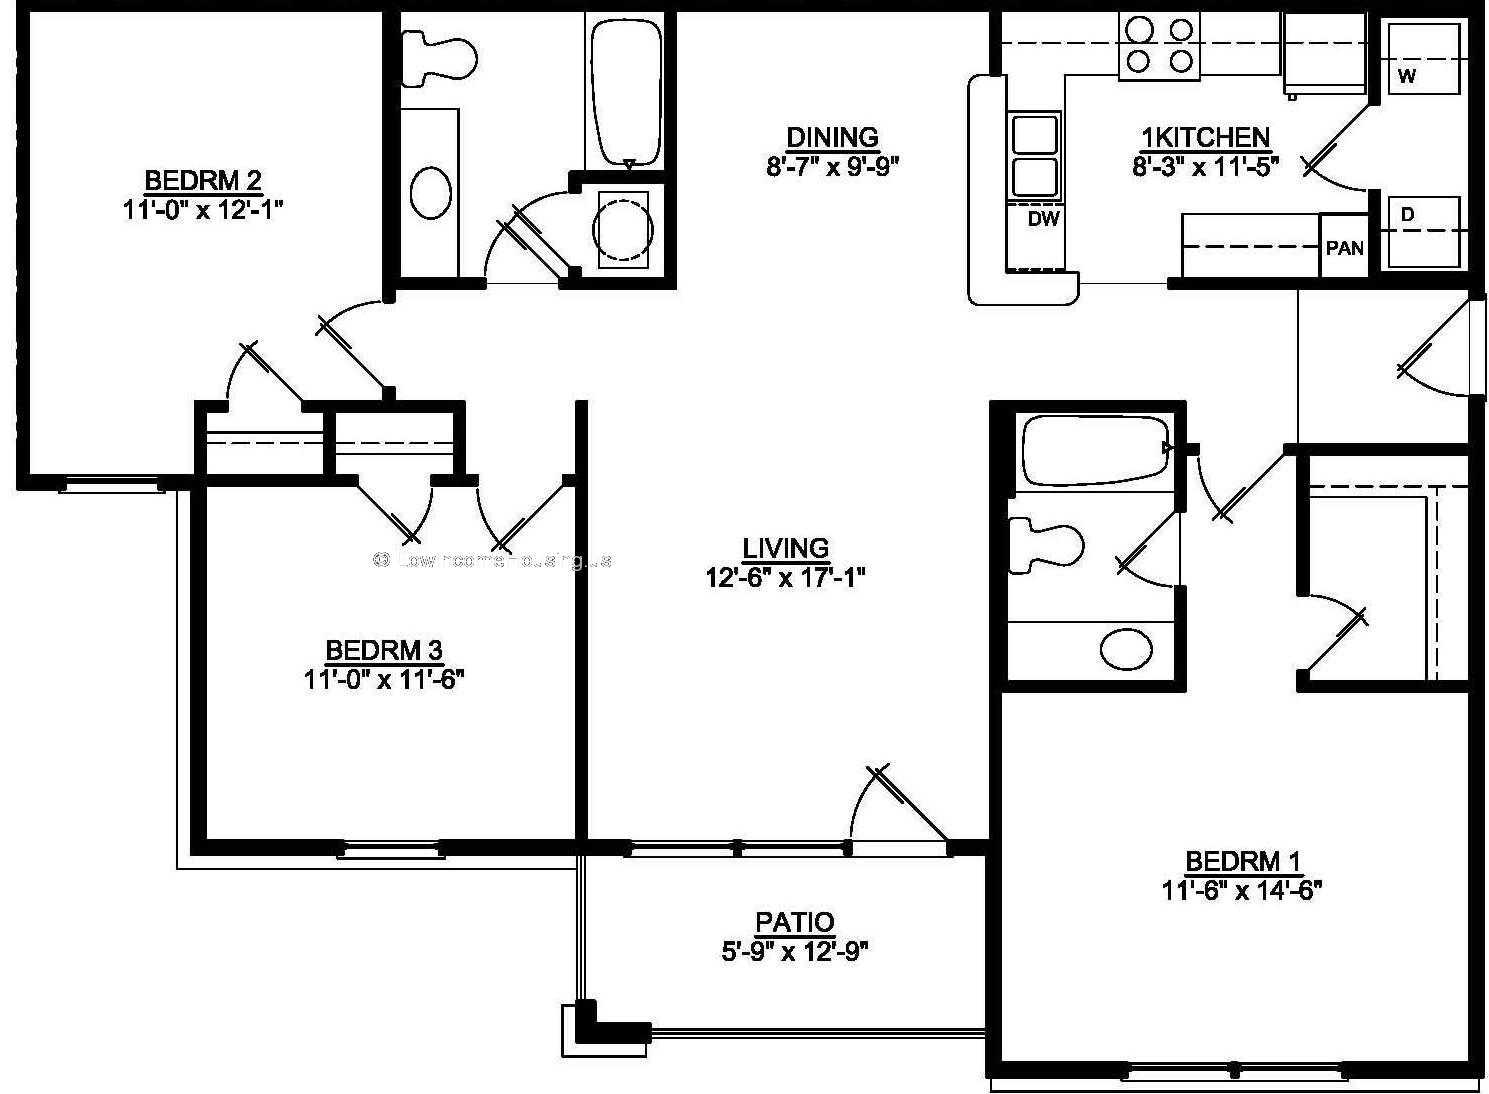 Bedroom 1 (11'x14'), Bedroom 2 (11' x 12'), Bedroom 3 (11' x 12'), Patio (6'x12'), Living (12' x 17') 